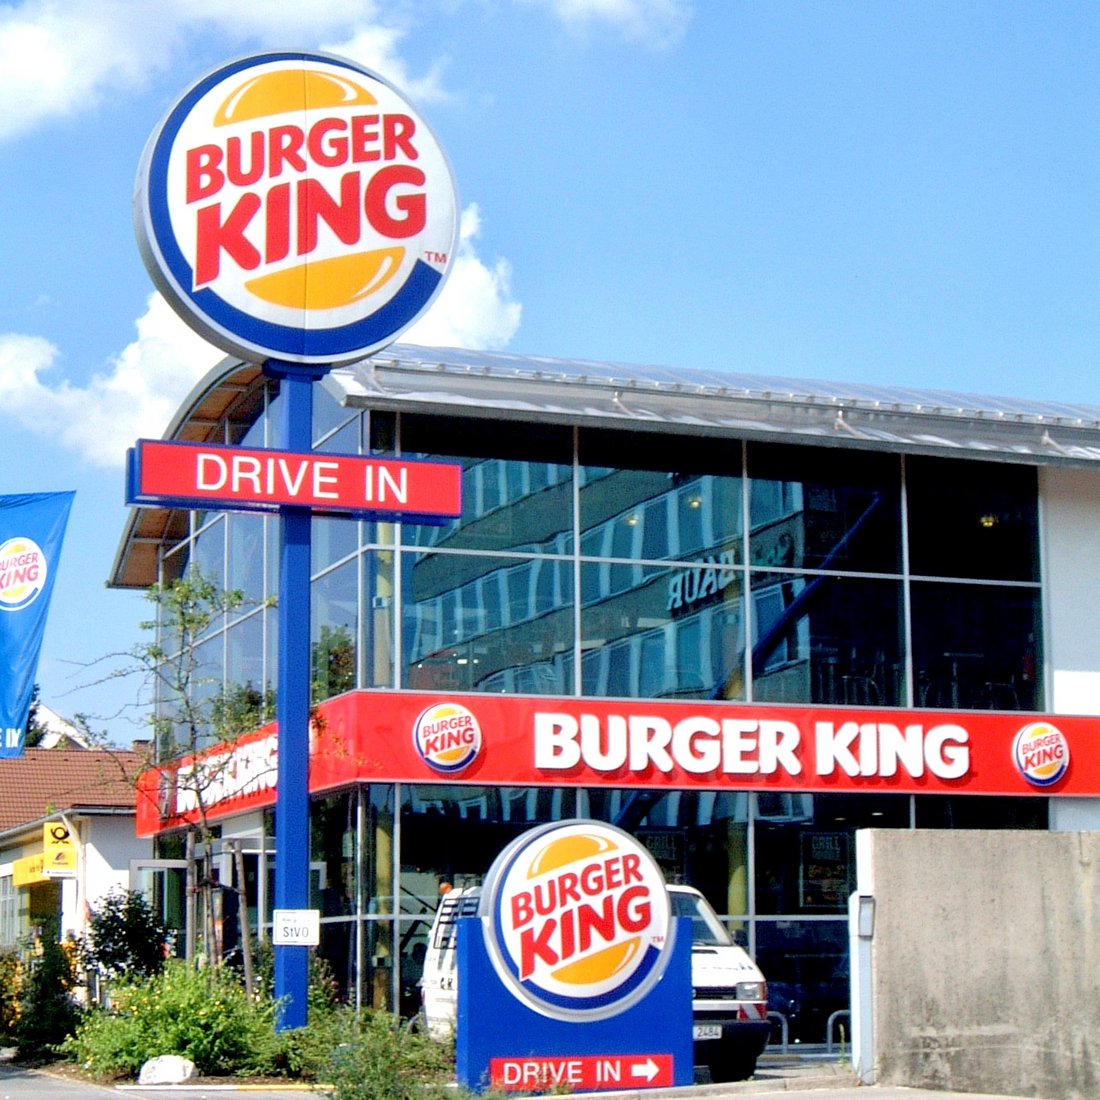 Advertising tower Burger King